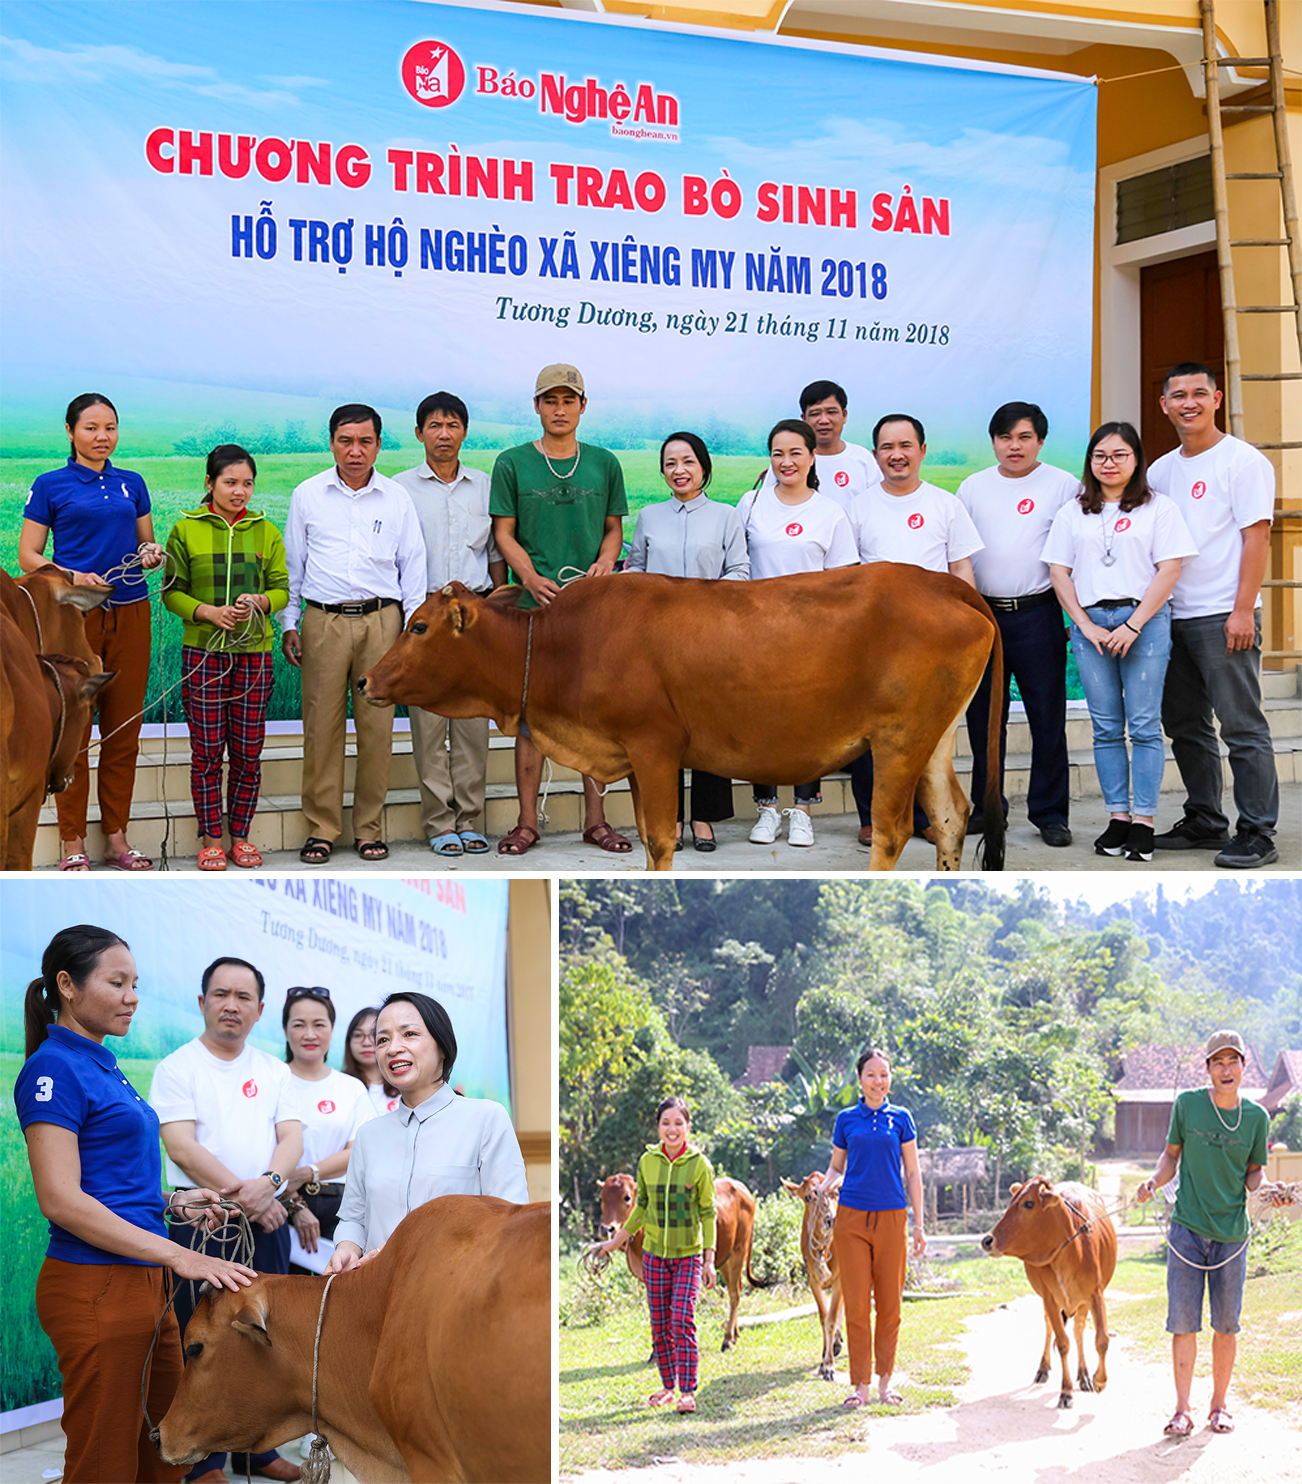 Năm 2018 là năm thứ 7, Báo Nghệ An thực hiện Chương trình trao bò sinh sản hỗ trợ hộ nghèo xã Xiêng My.